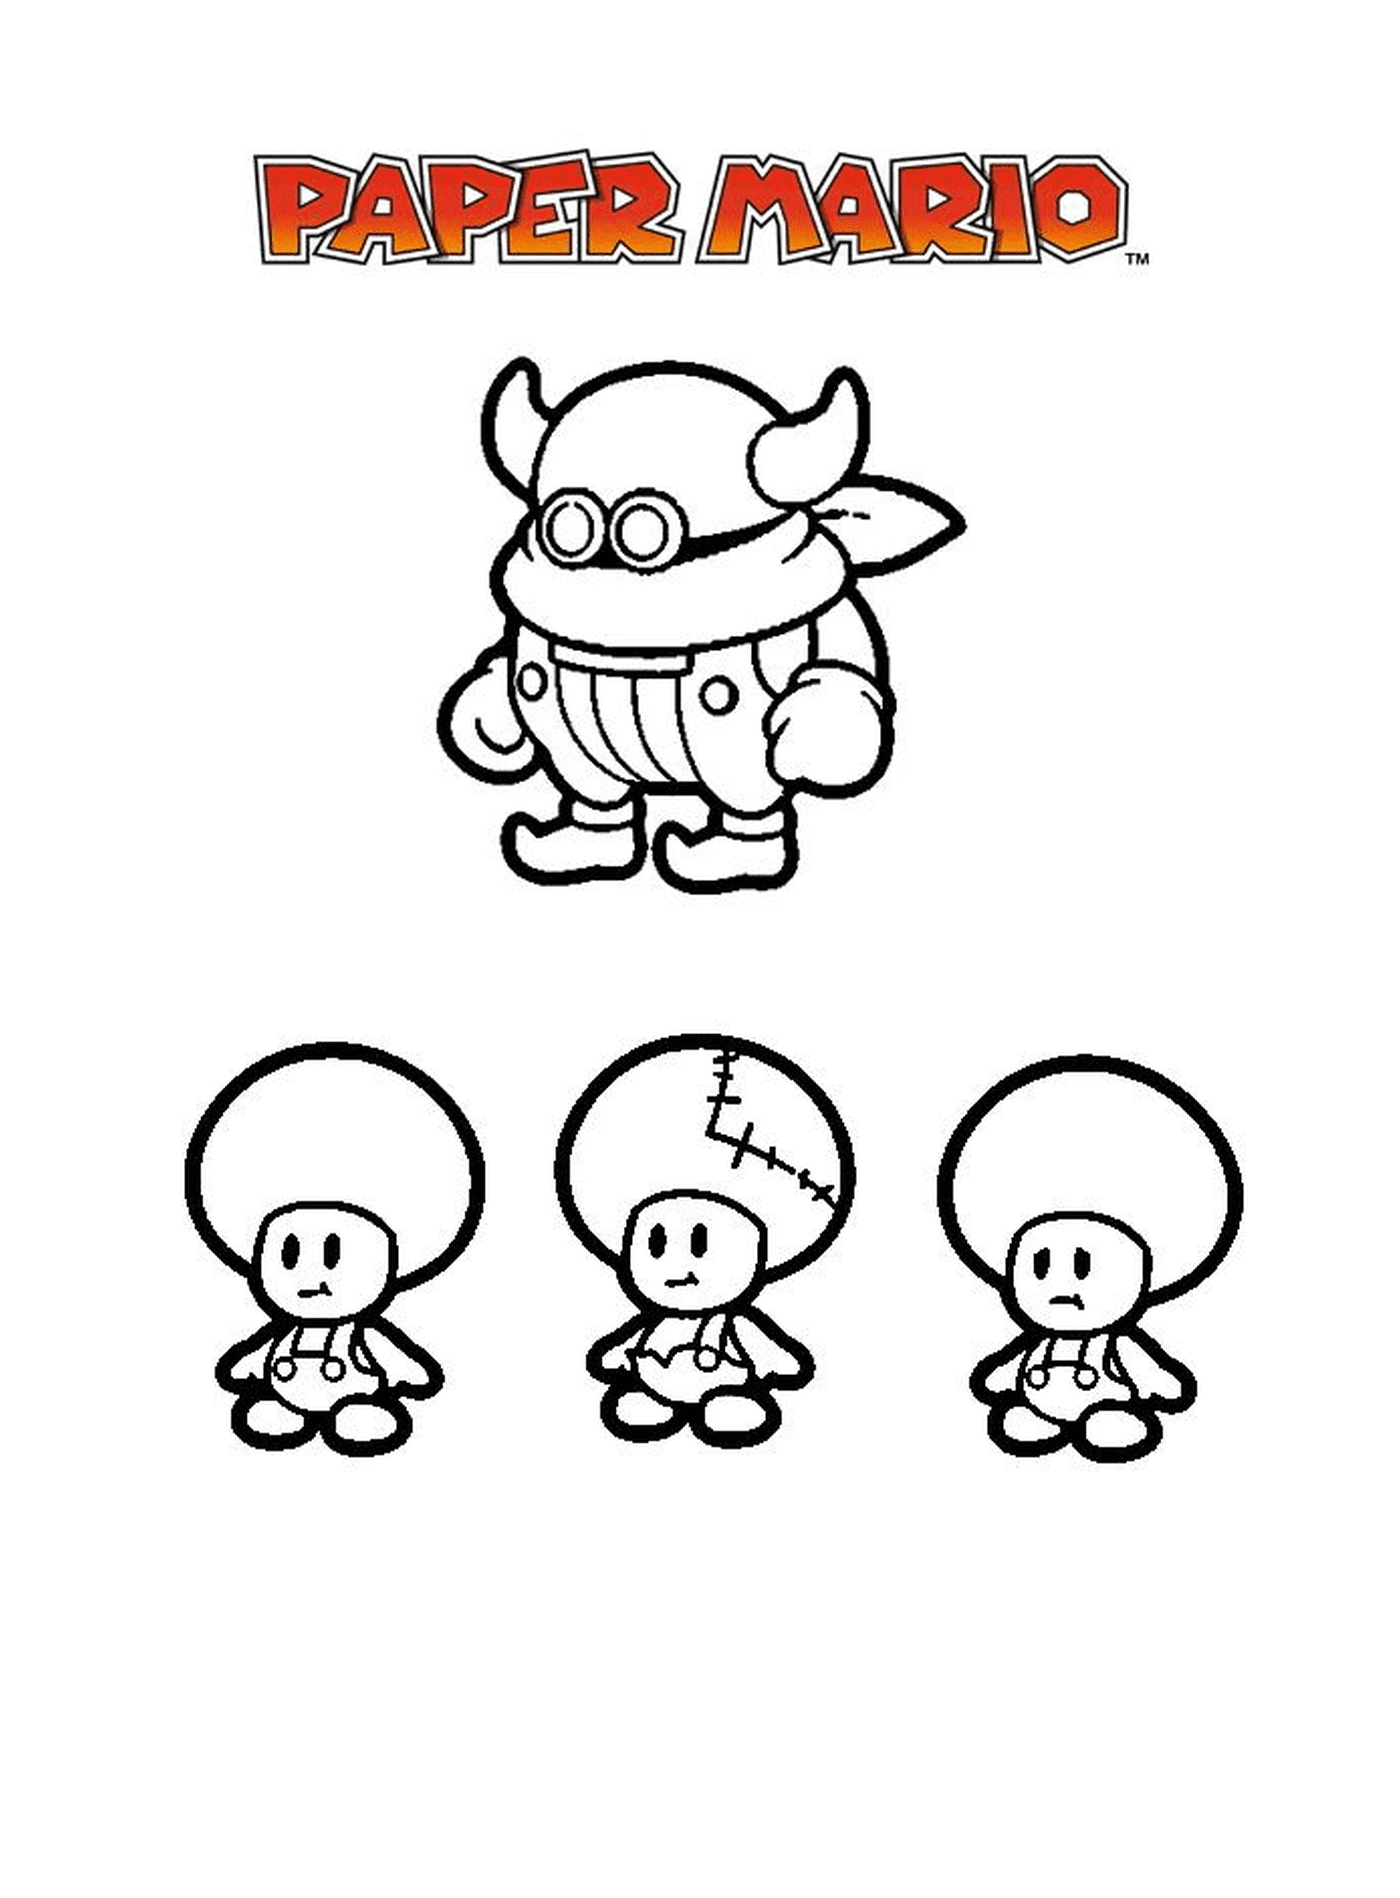  Paper Mario Millennium 10, карикатурный персонаж с тремя различными этапами развития 